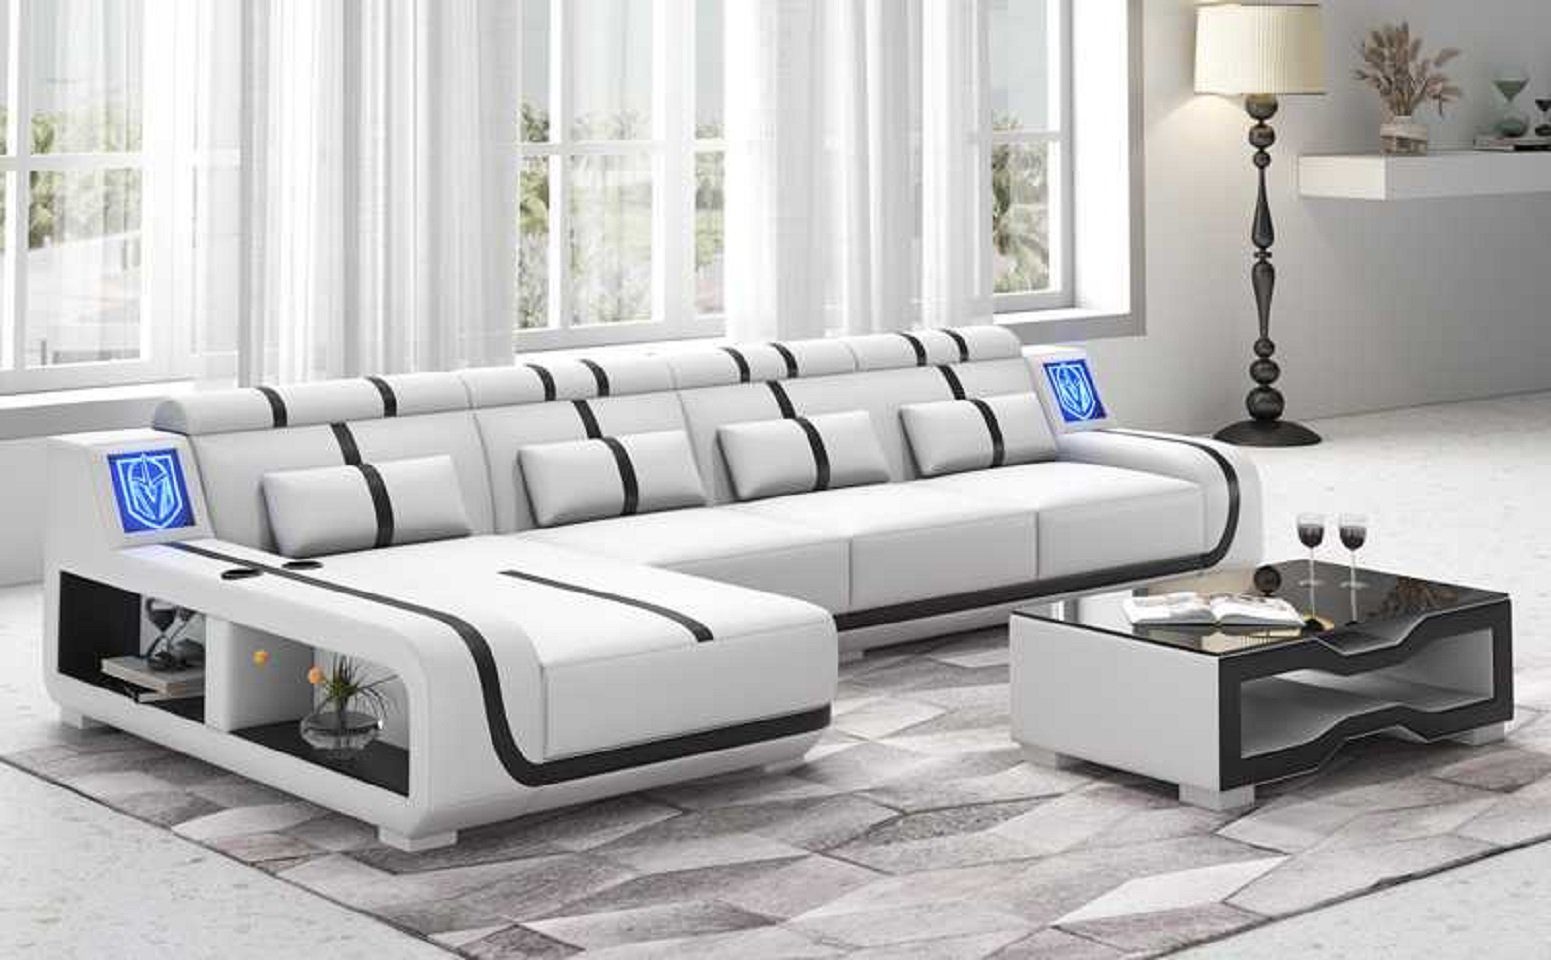 JVmoebel Ecksofa Design Ecksofa Couch L Form Liege Modern Sofa couchen, 3 Teile, Made in Europe Weiß